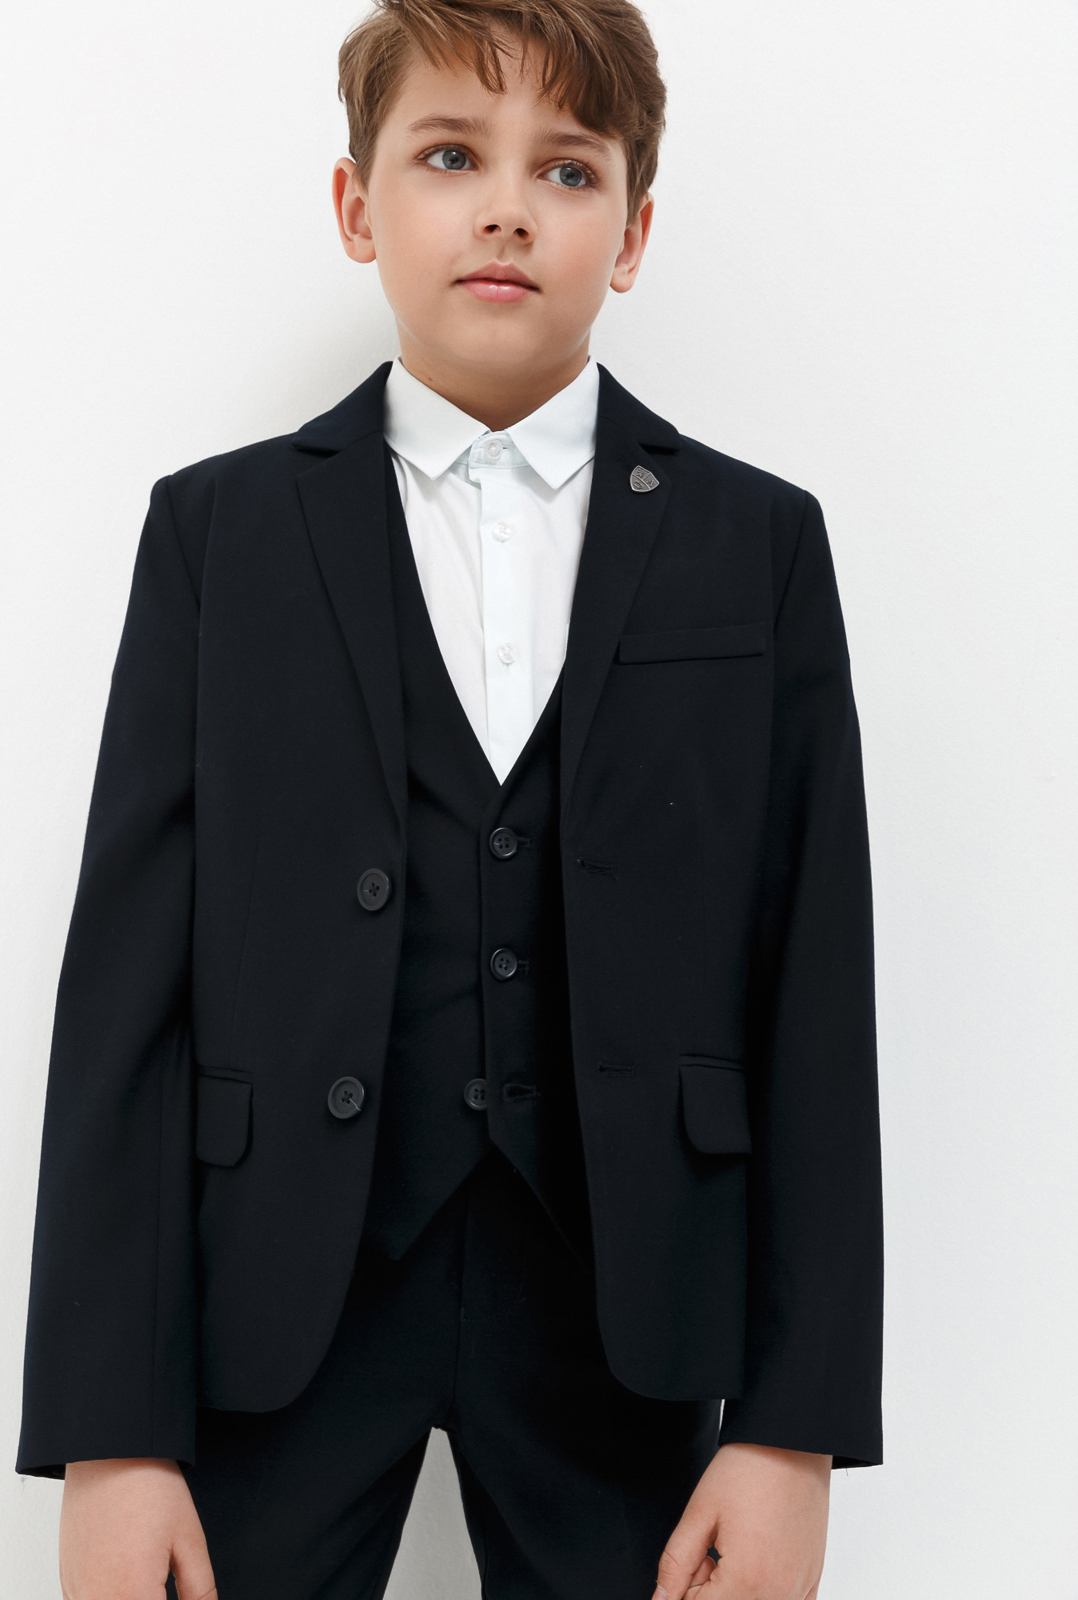 Пиджак для мальчика Acoola Madison, цвет: темно-голубой. 20140130031_600. Размер 164